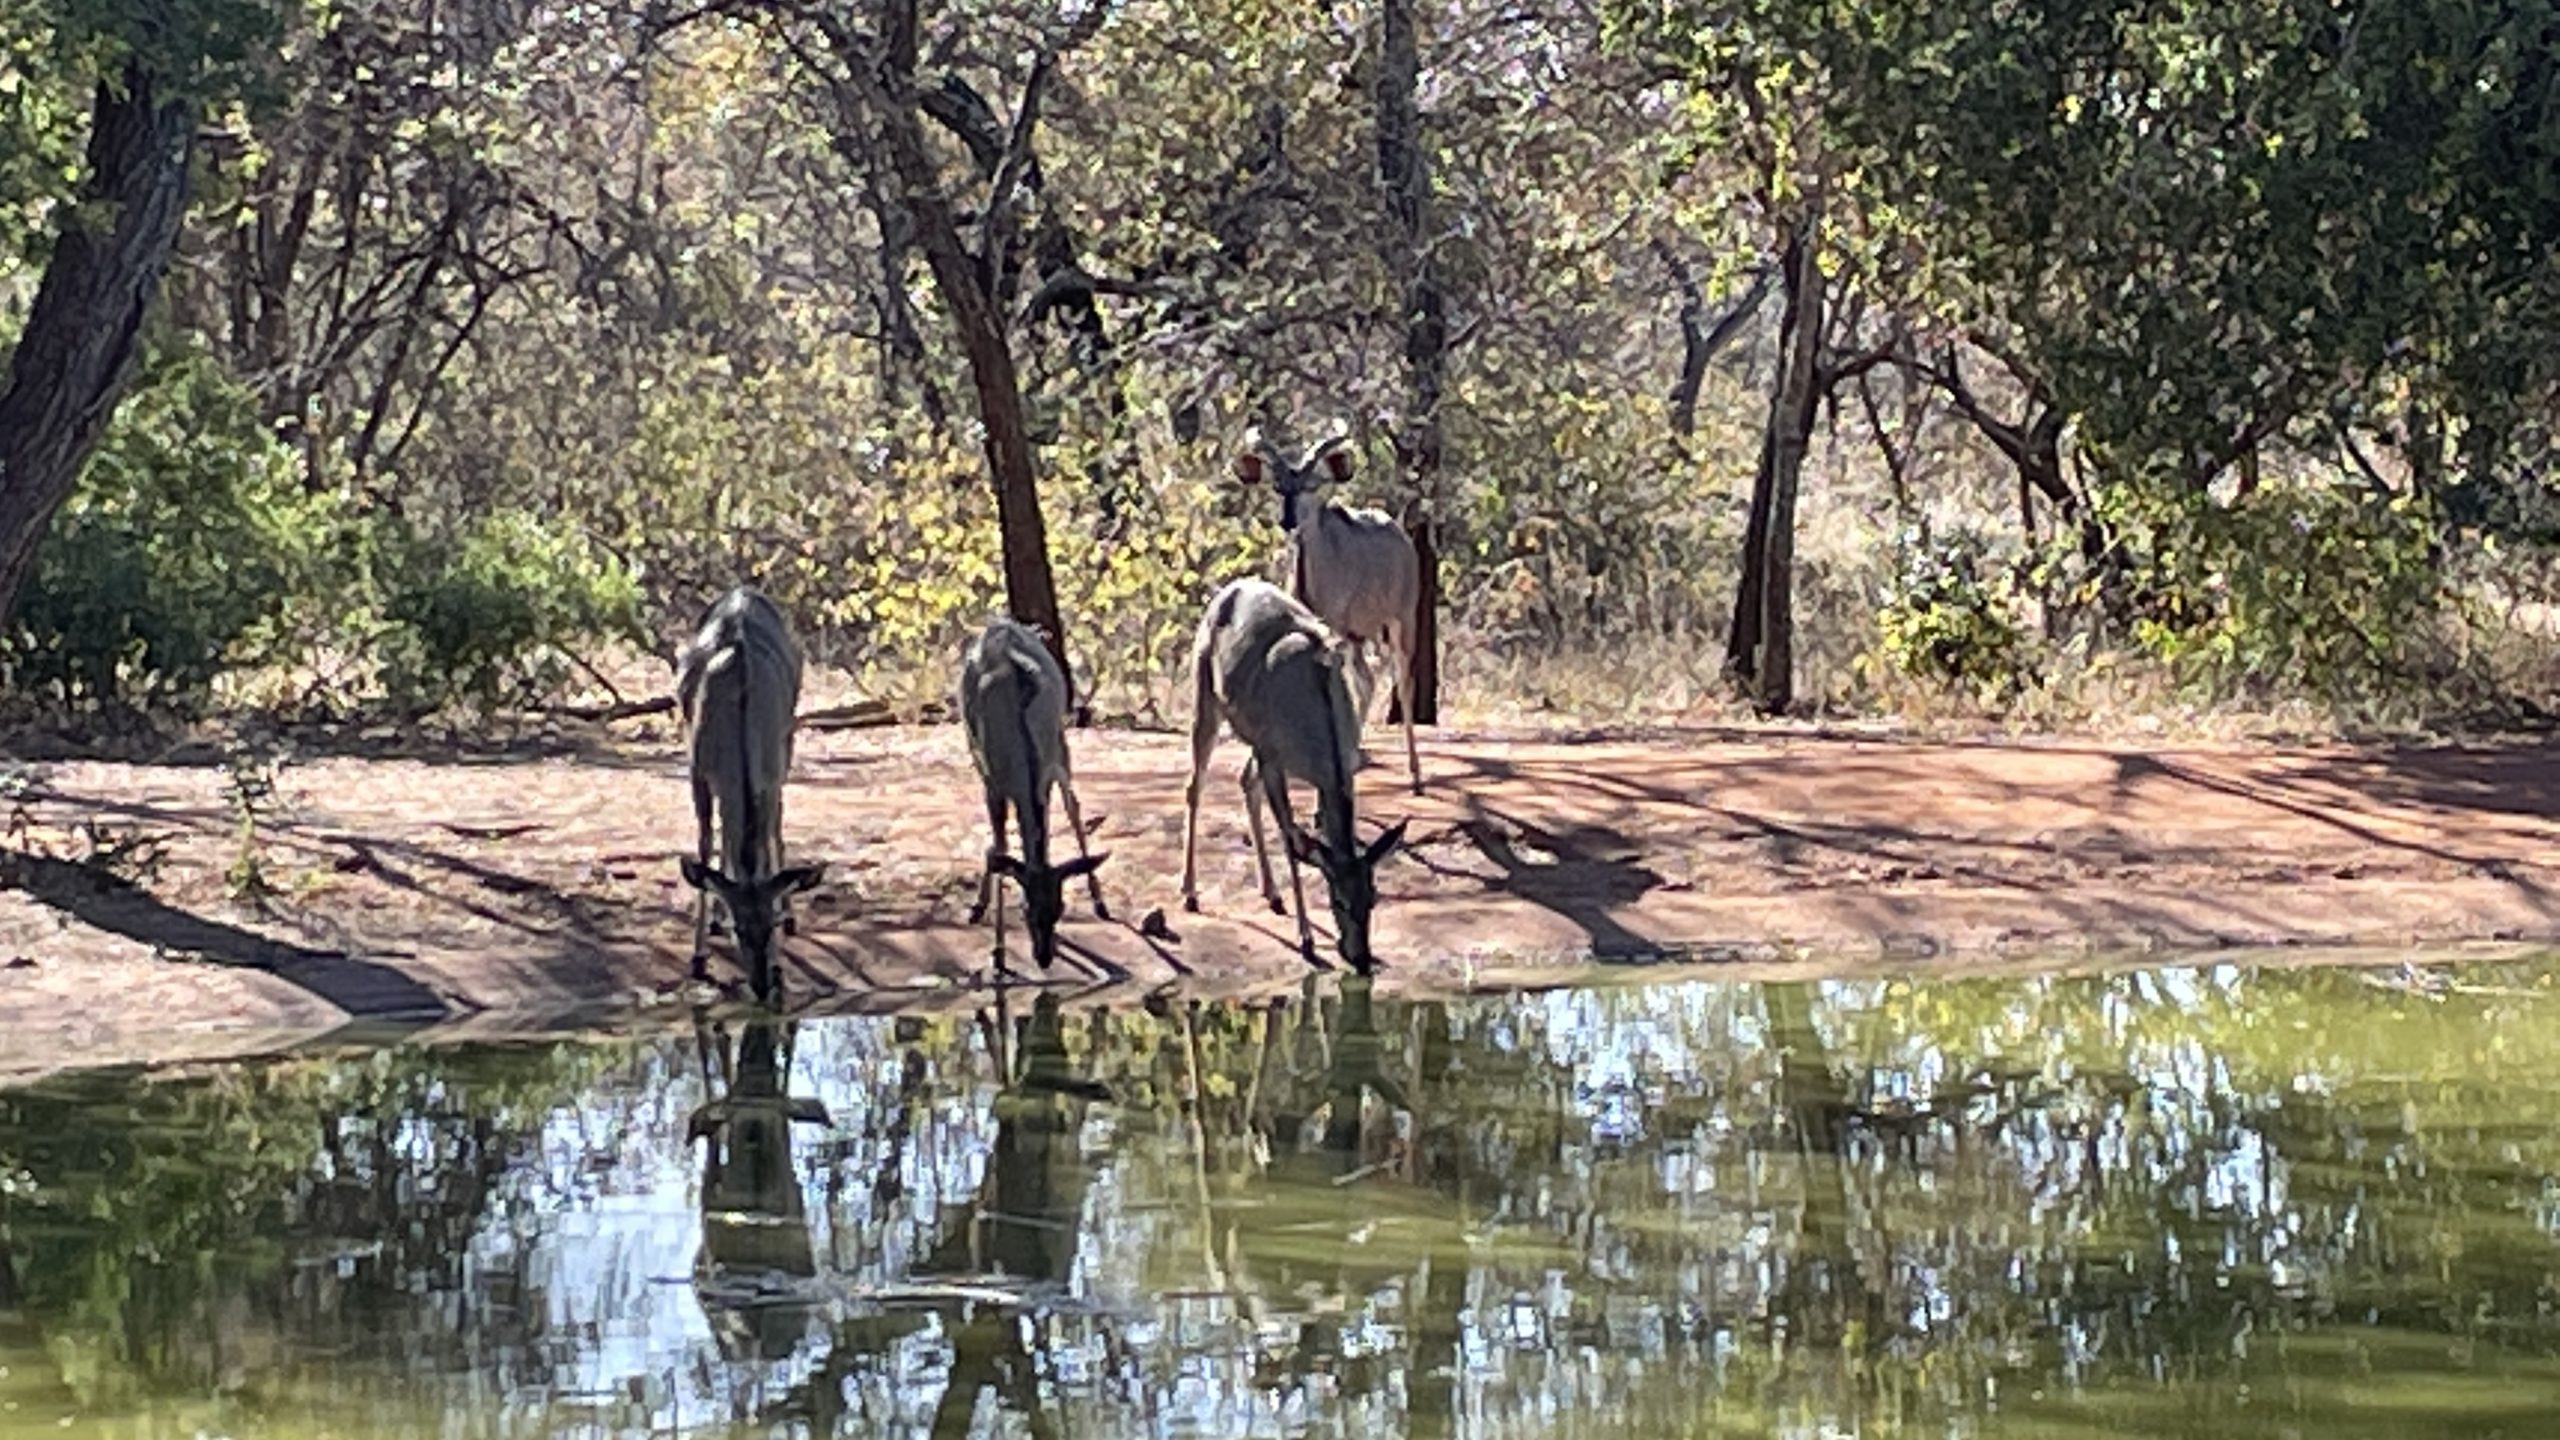 TripADeal South Africa Safari antelopes